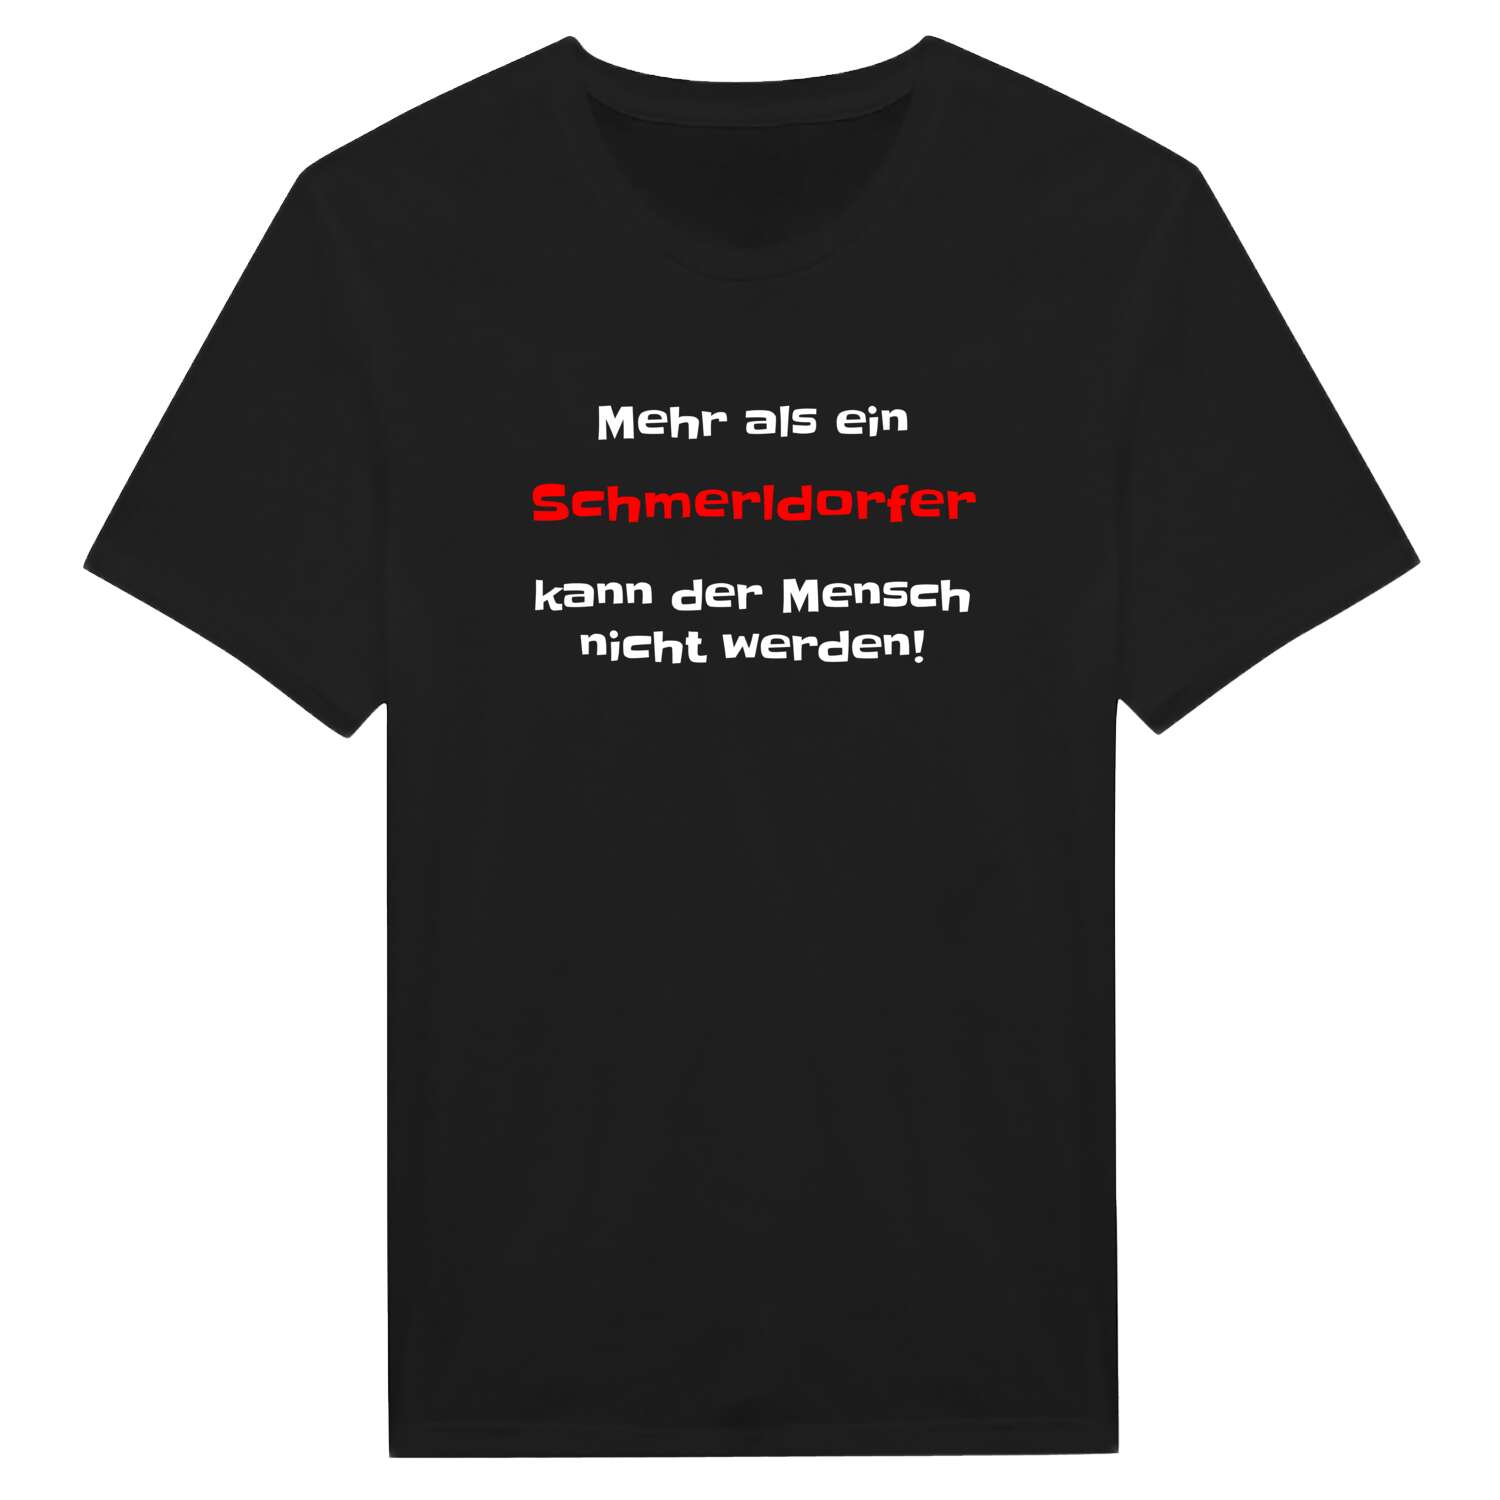 Schmerldorf T-Shirt »Mehr als ein«